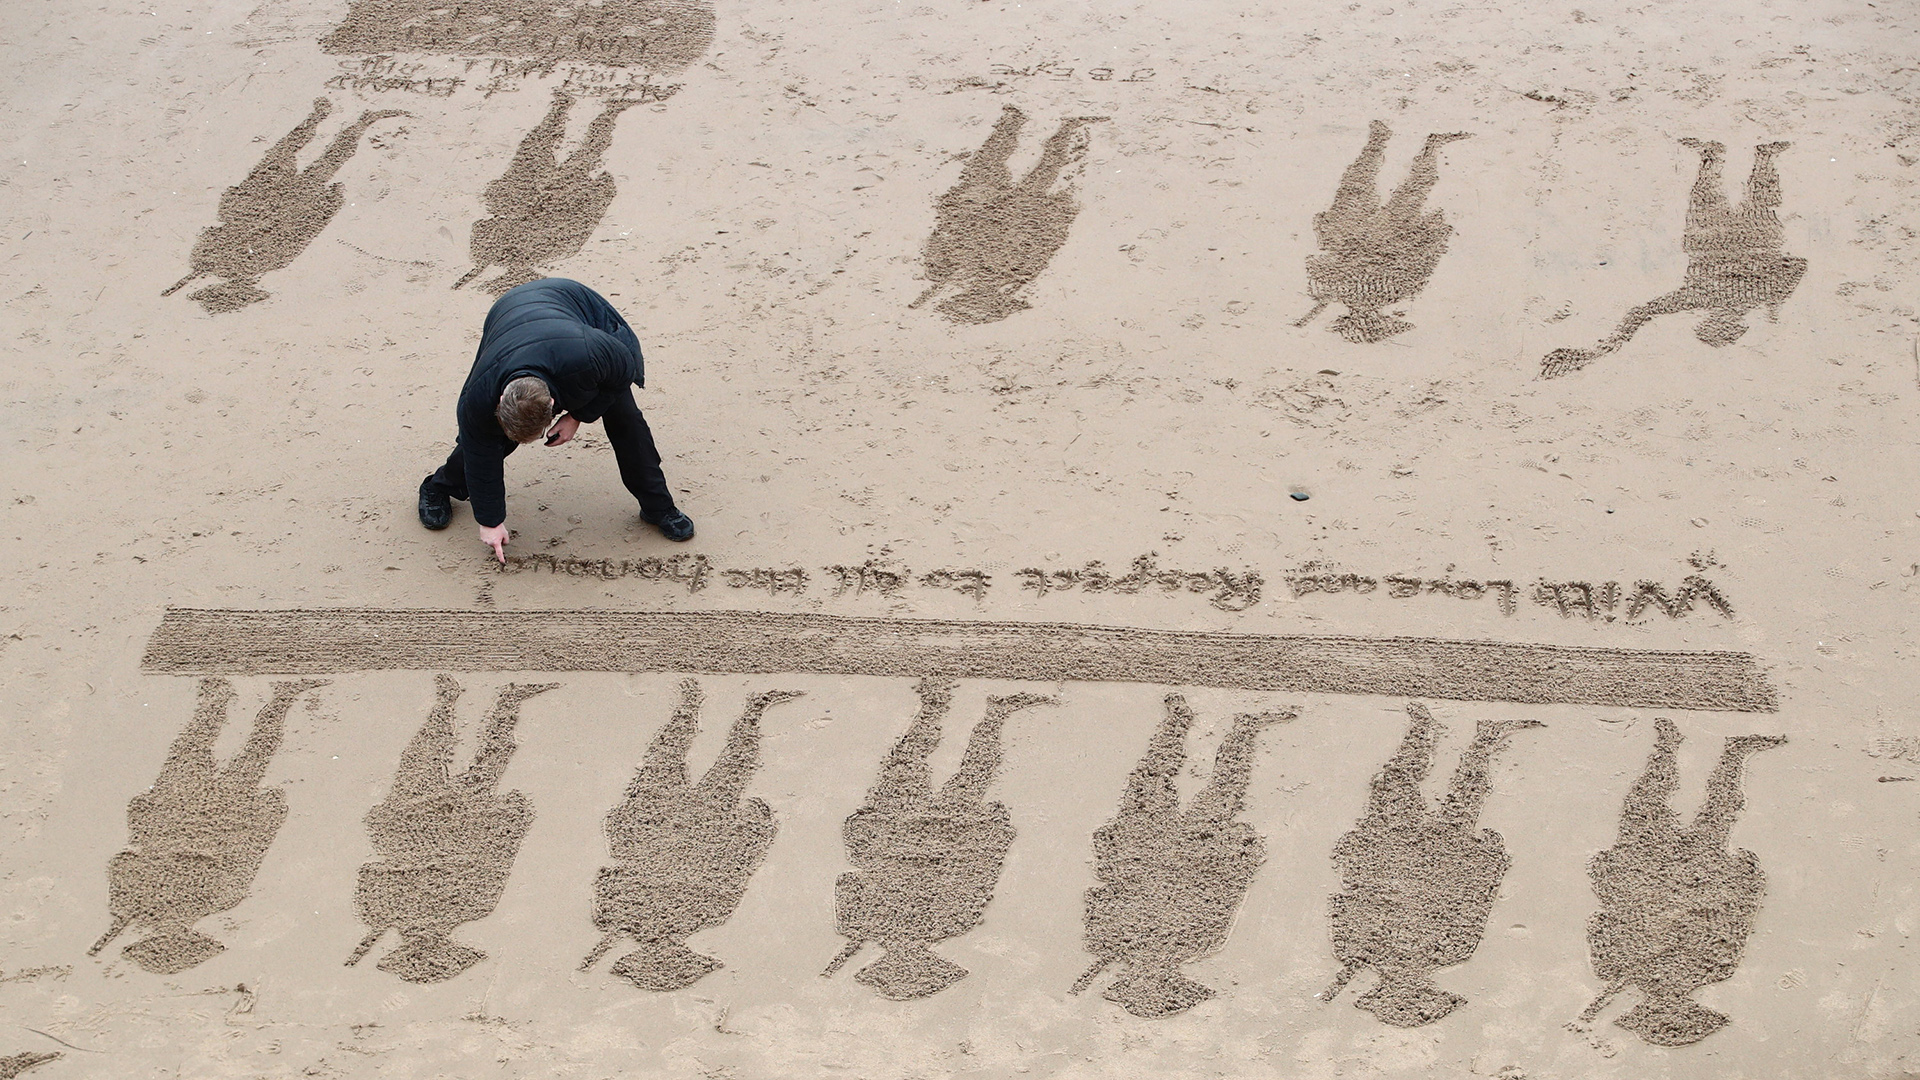 Konturen von Soldaten in den Sand | Bildquelle: dpa